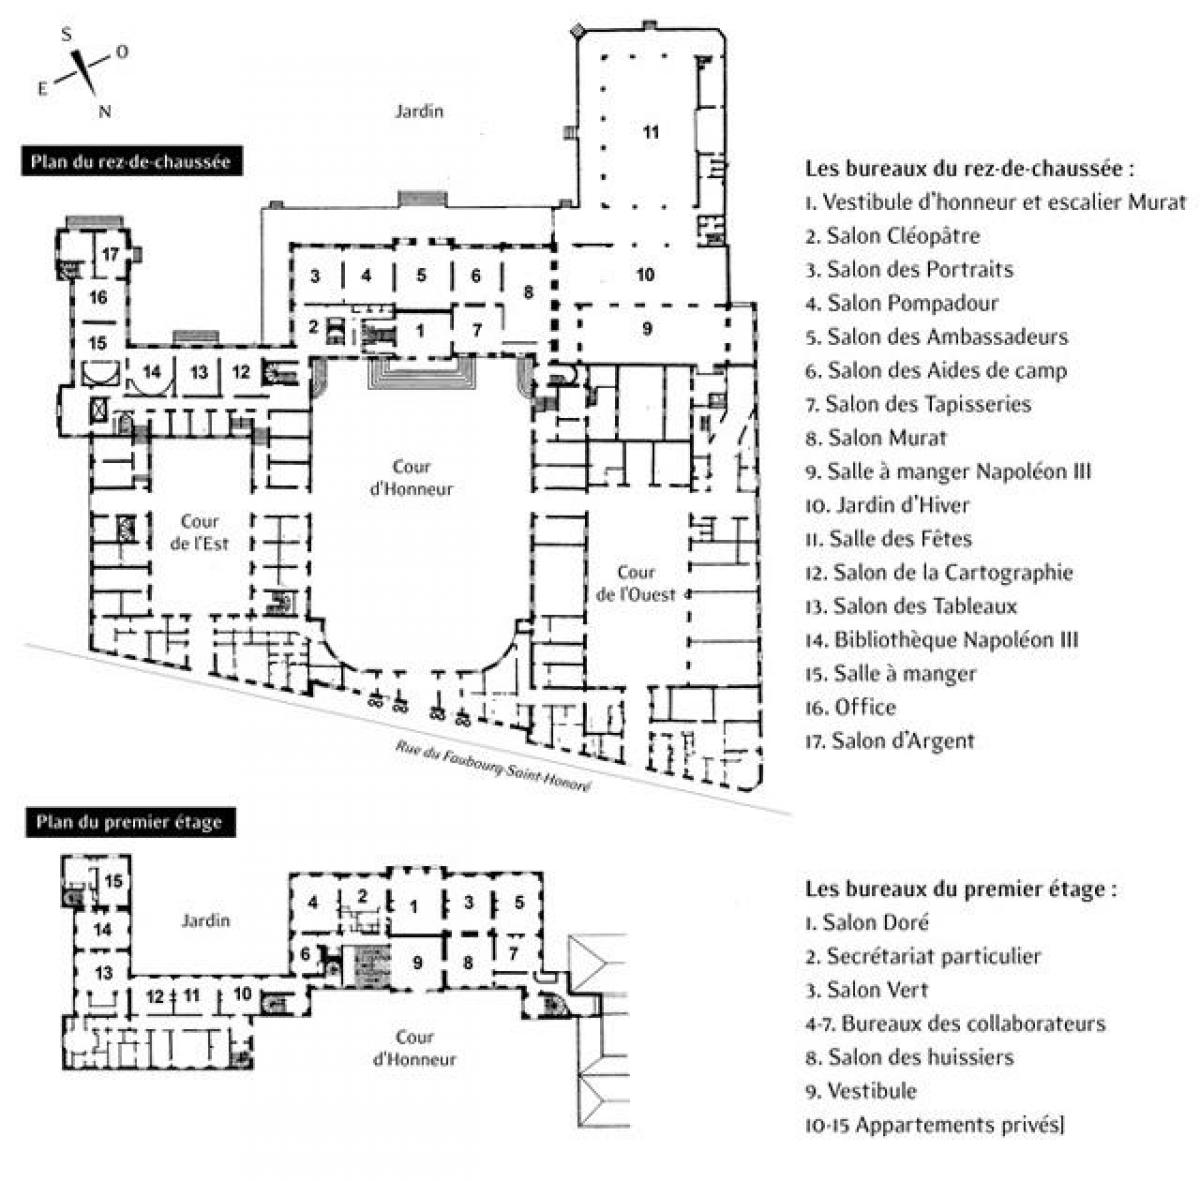 خريطة قصر الإليزيه